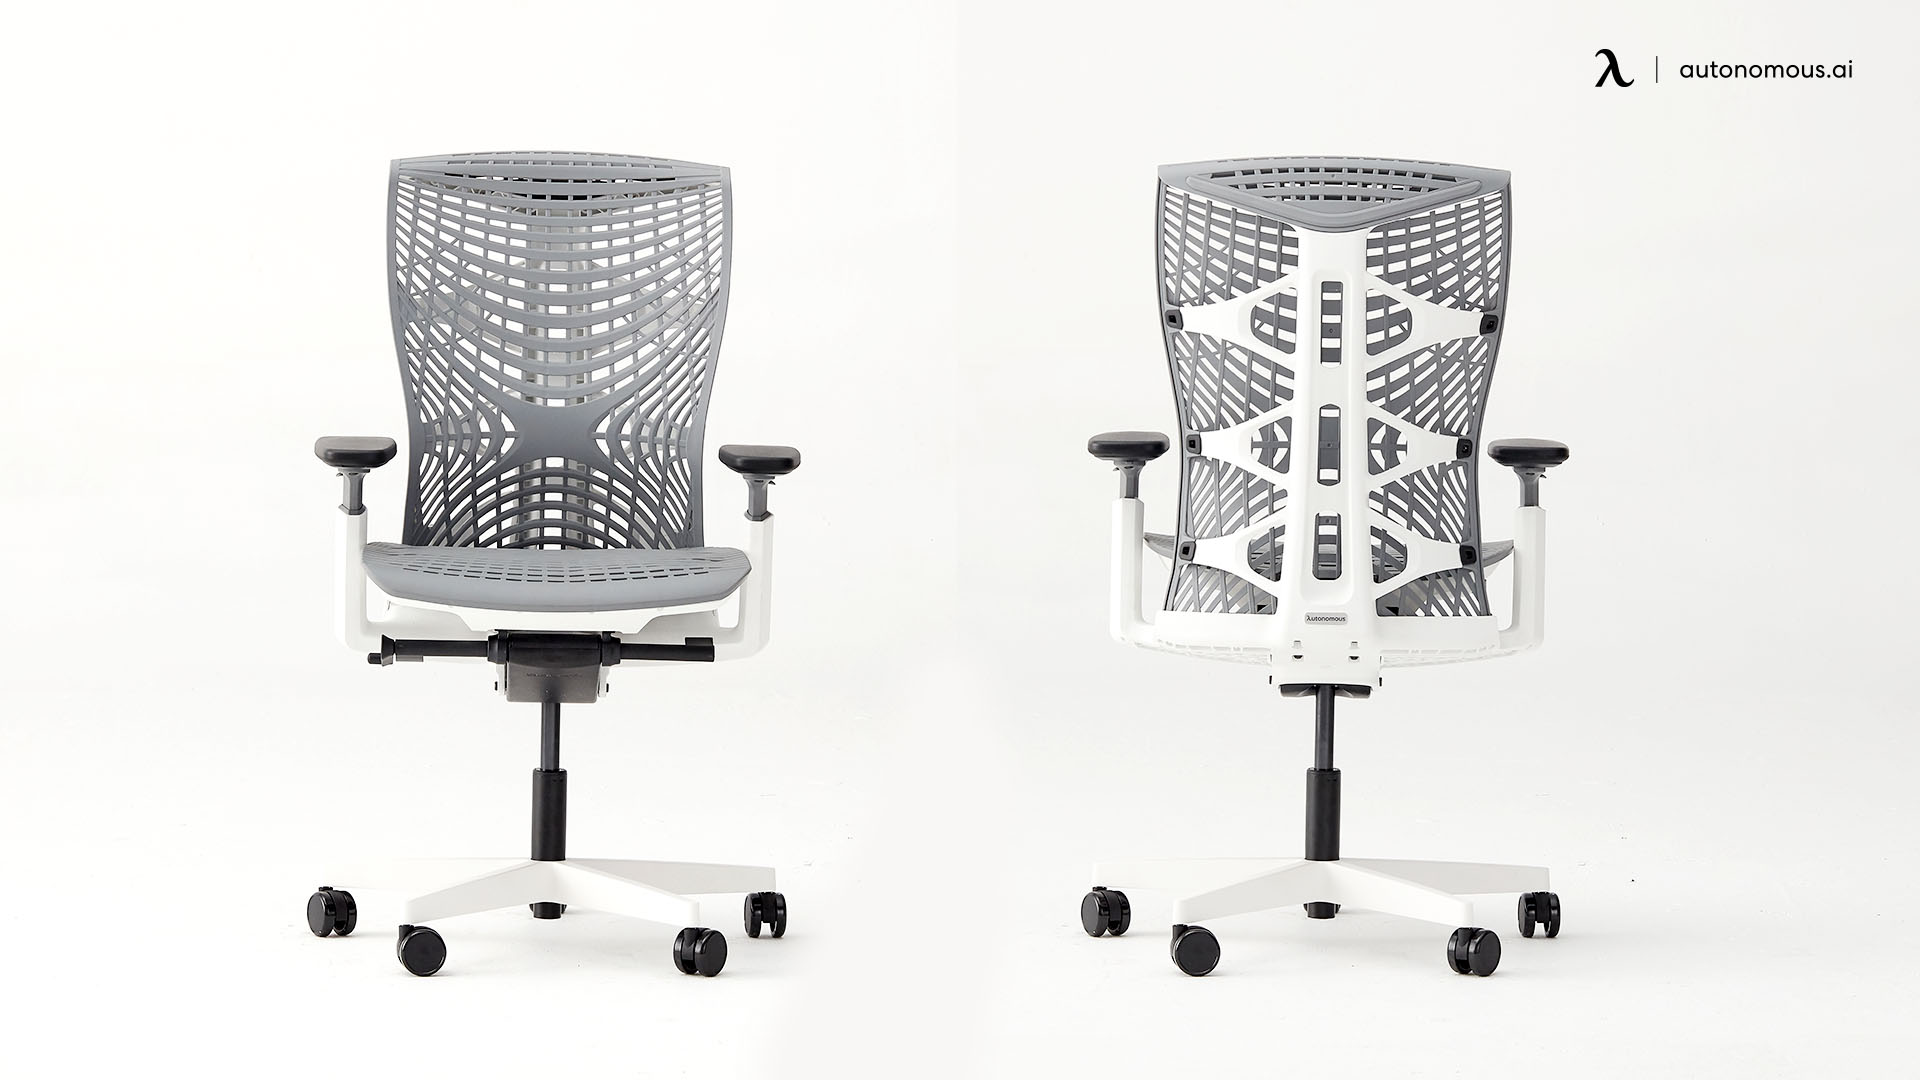 The ErgoChair Plus light gray office chair